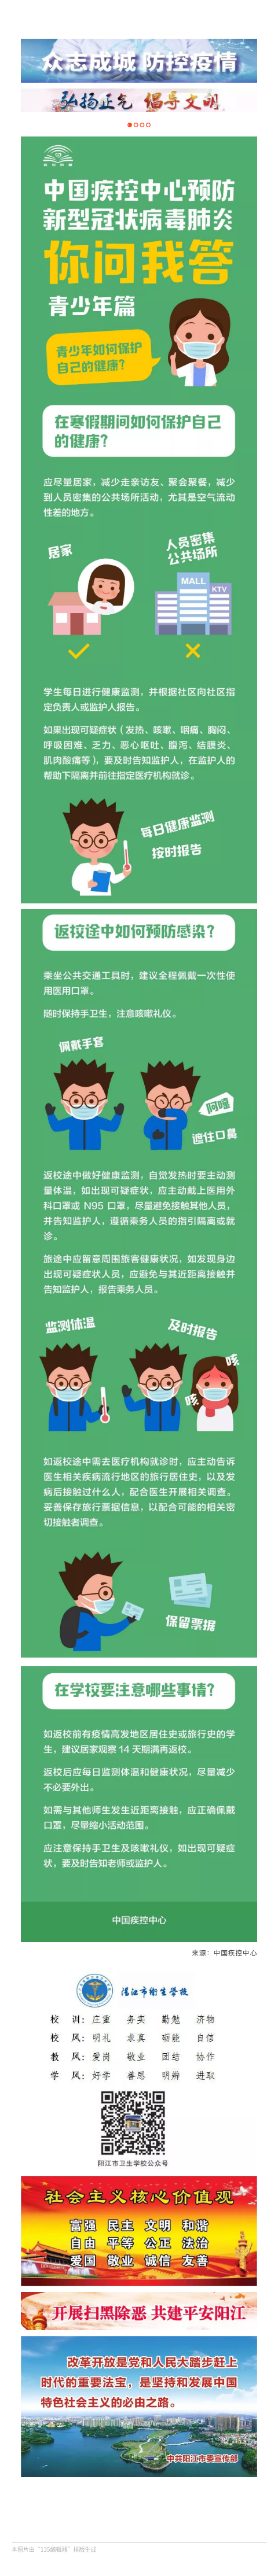 【转载】中国疾控中心预防新型冠状病毒肺炎你问我答(青少年篇)